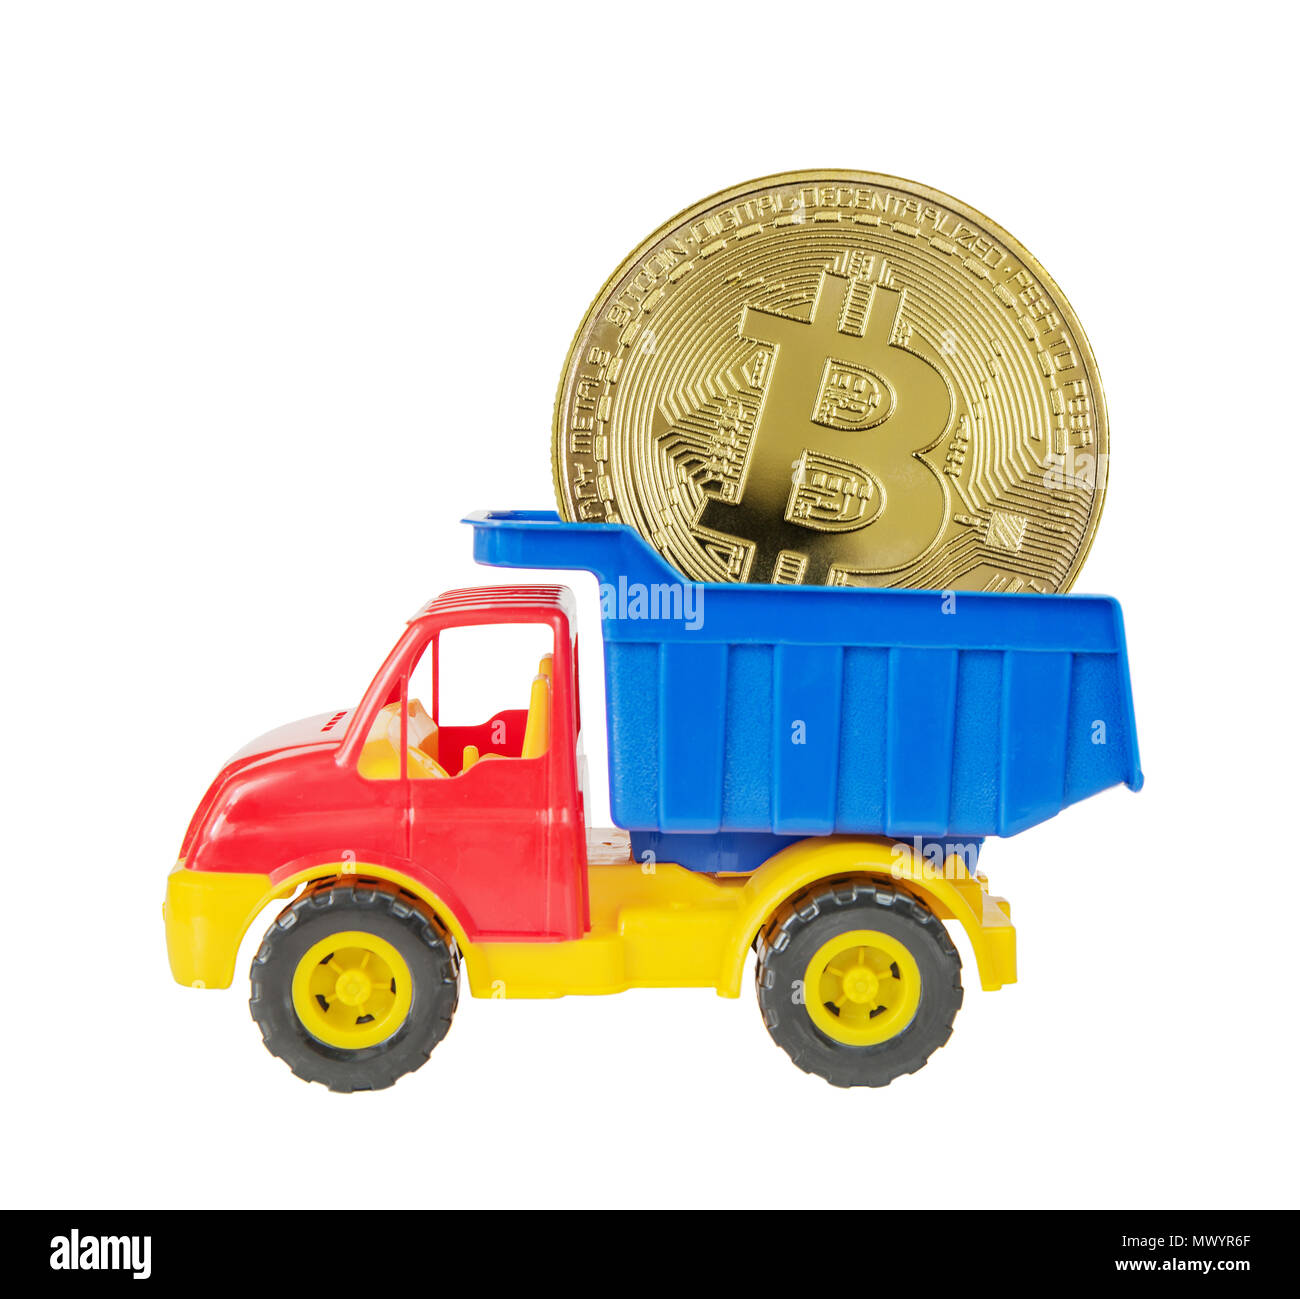 Mehrfarbige Kunststoff Spielzeug Lkw liefert einen symbolischen Münze von bitcoin crypto Währung, neue digitale Geld in cyber Welt, auf weißem Hintergrund Stockfoto